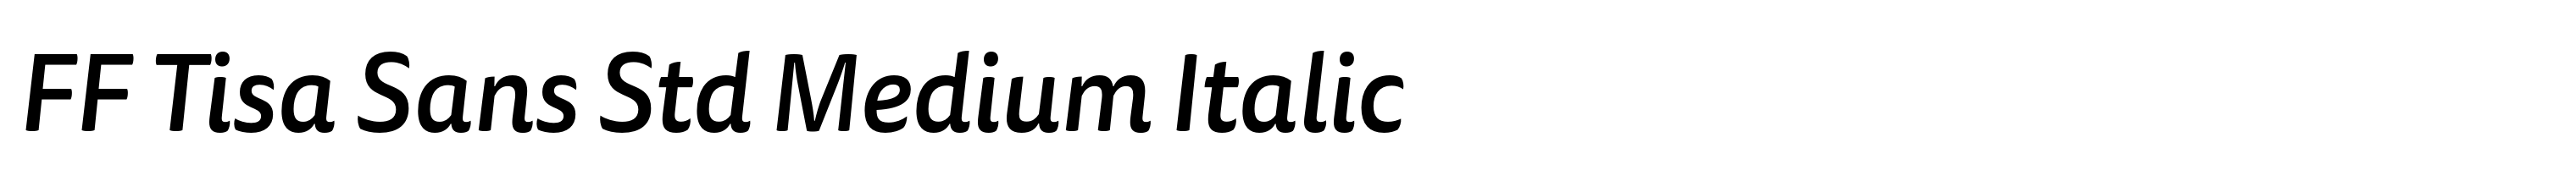 FF Tisa Sans Std Medium Italic